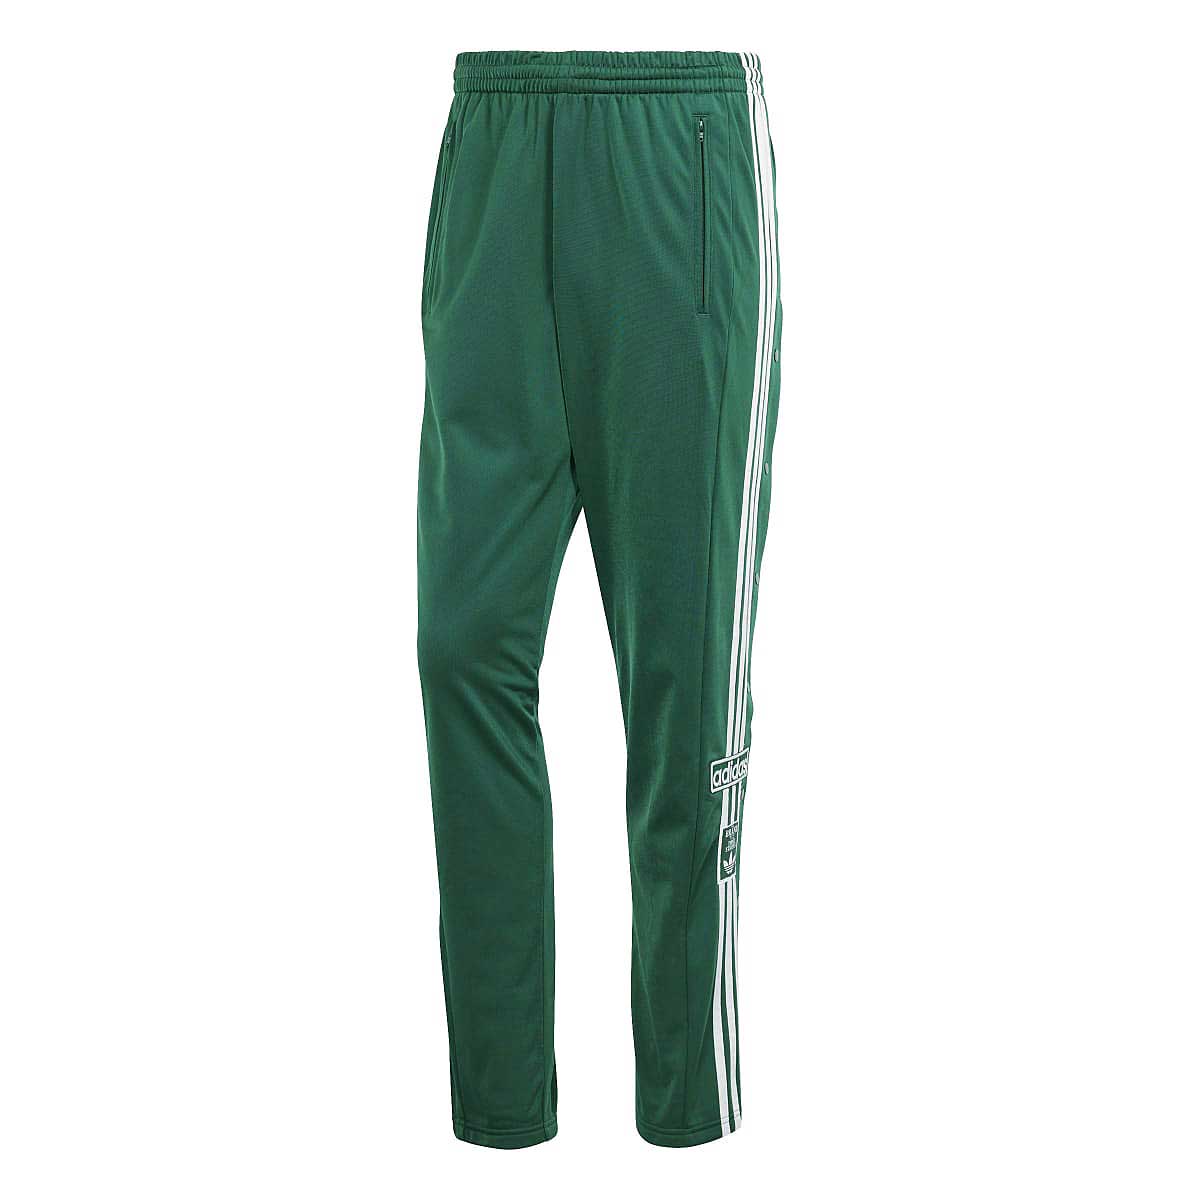 Adidas Adibreak Pants, Green L